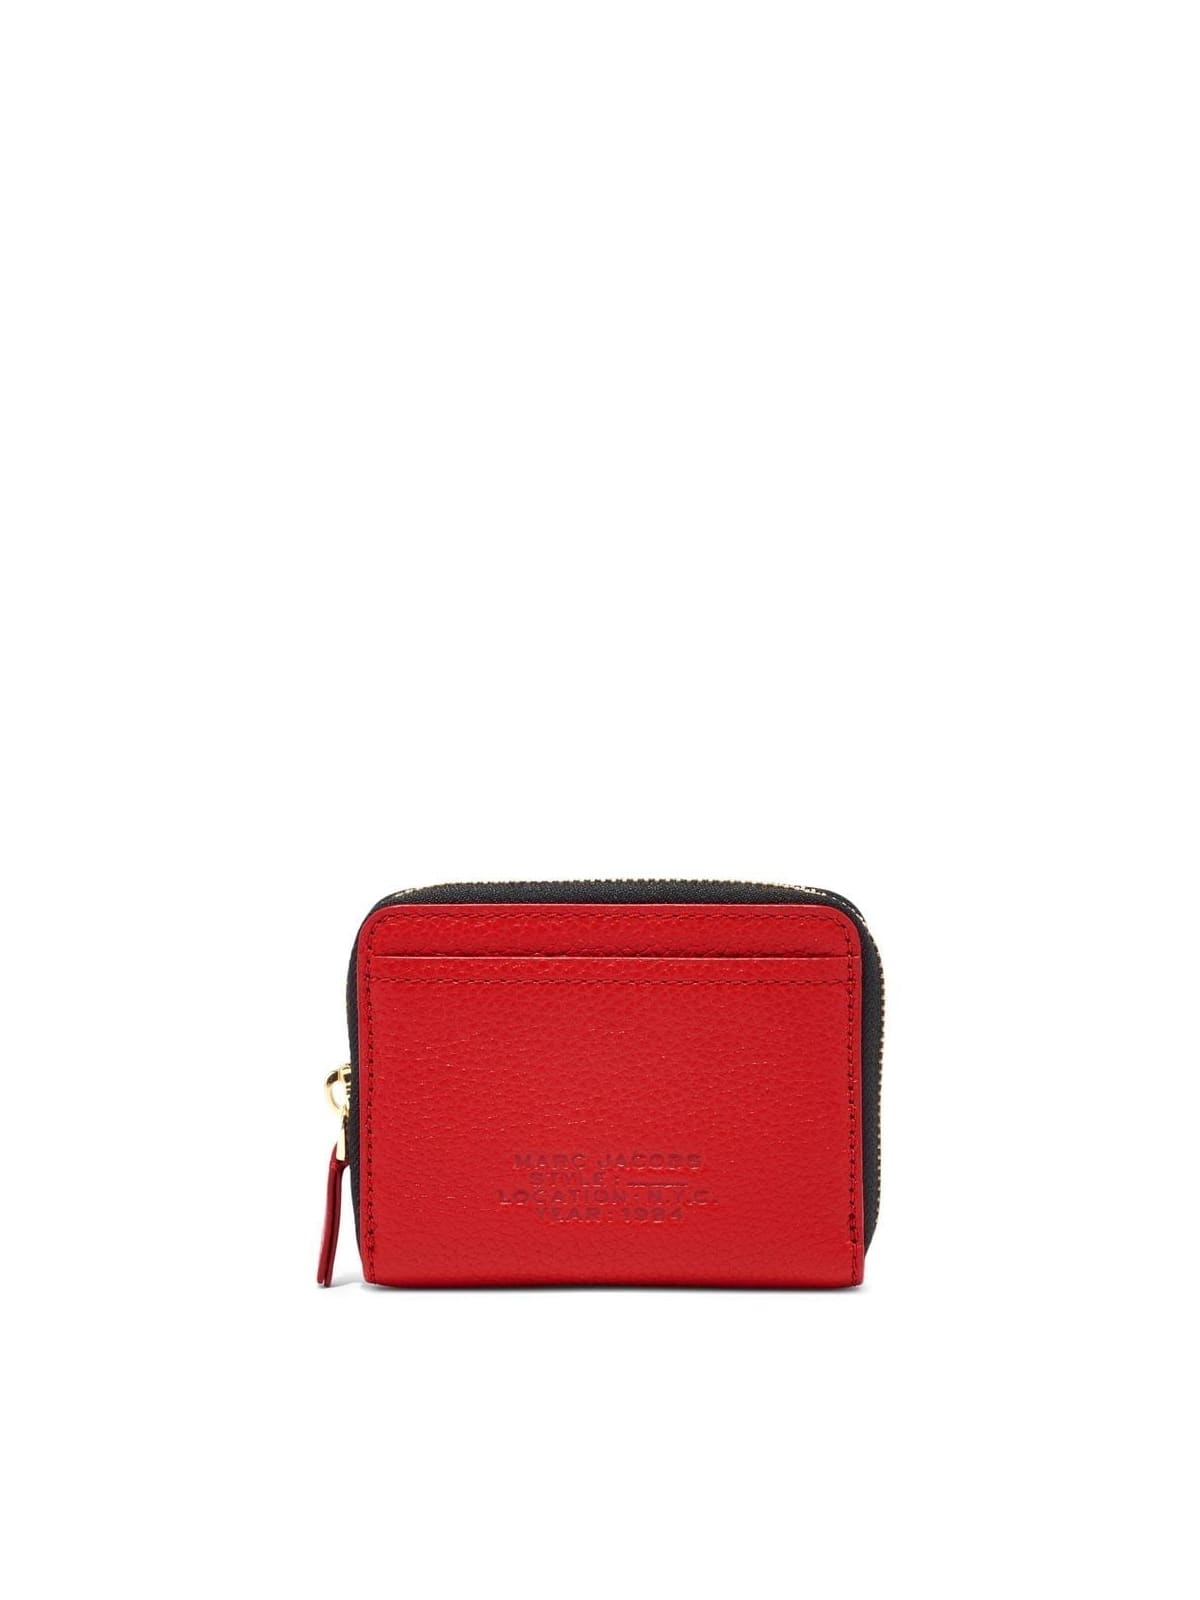 Marc Jacobs The Zip Around Wallet In True Red